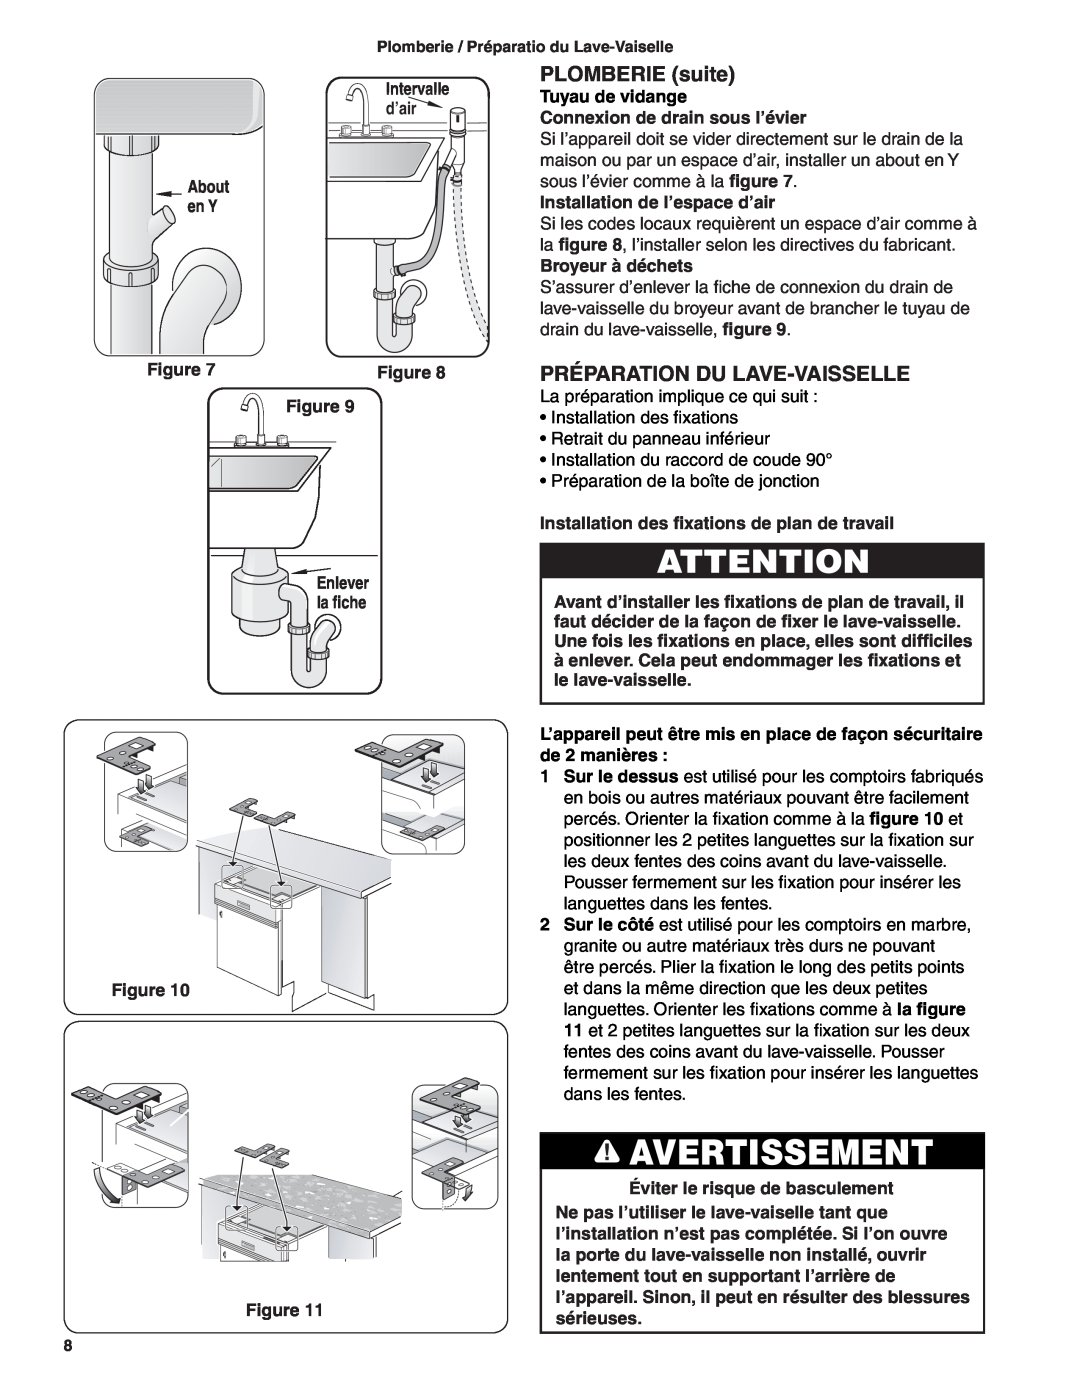 Bosch Appliances BSH Dishwasher important safety instructions PLOMBERIE suite, Préparation Du Lave-Vaisselle, Avertissement 